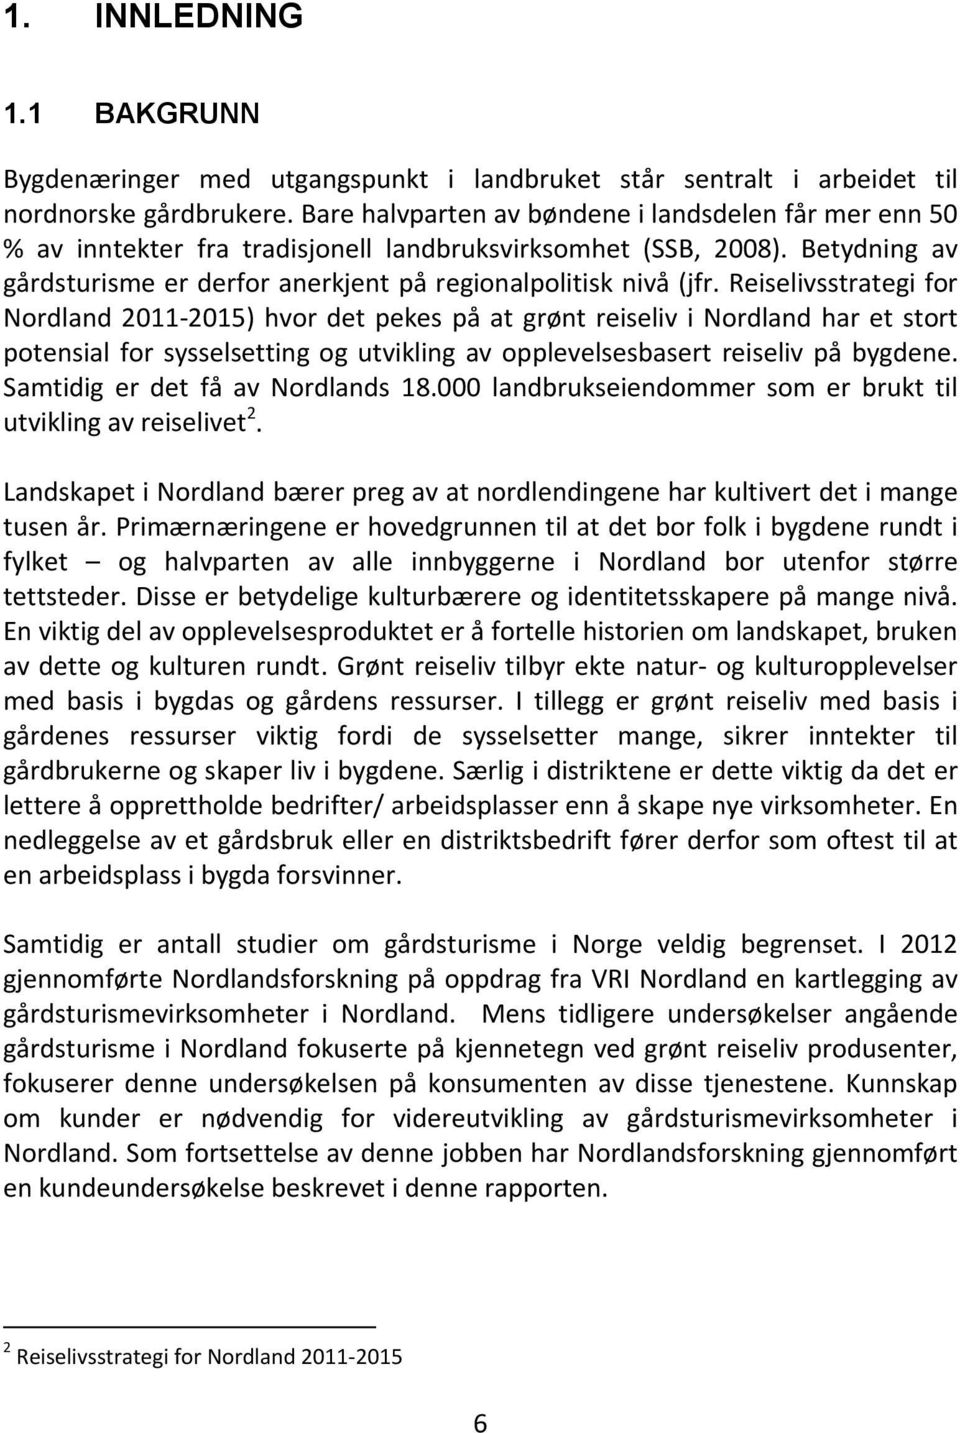 Reiselivsstrategi for Nordland 2011-2015) hvor det pekes på at grønt reiseliv i Nordland har et stort potensial for sysselsetting og utvikling av opplevelsesbasert reiseliv på bygdene.